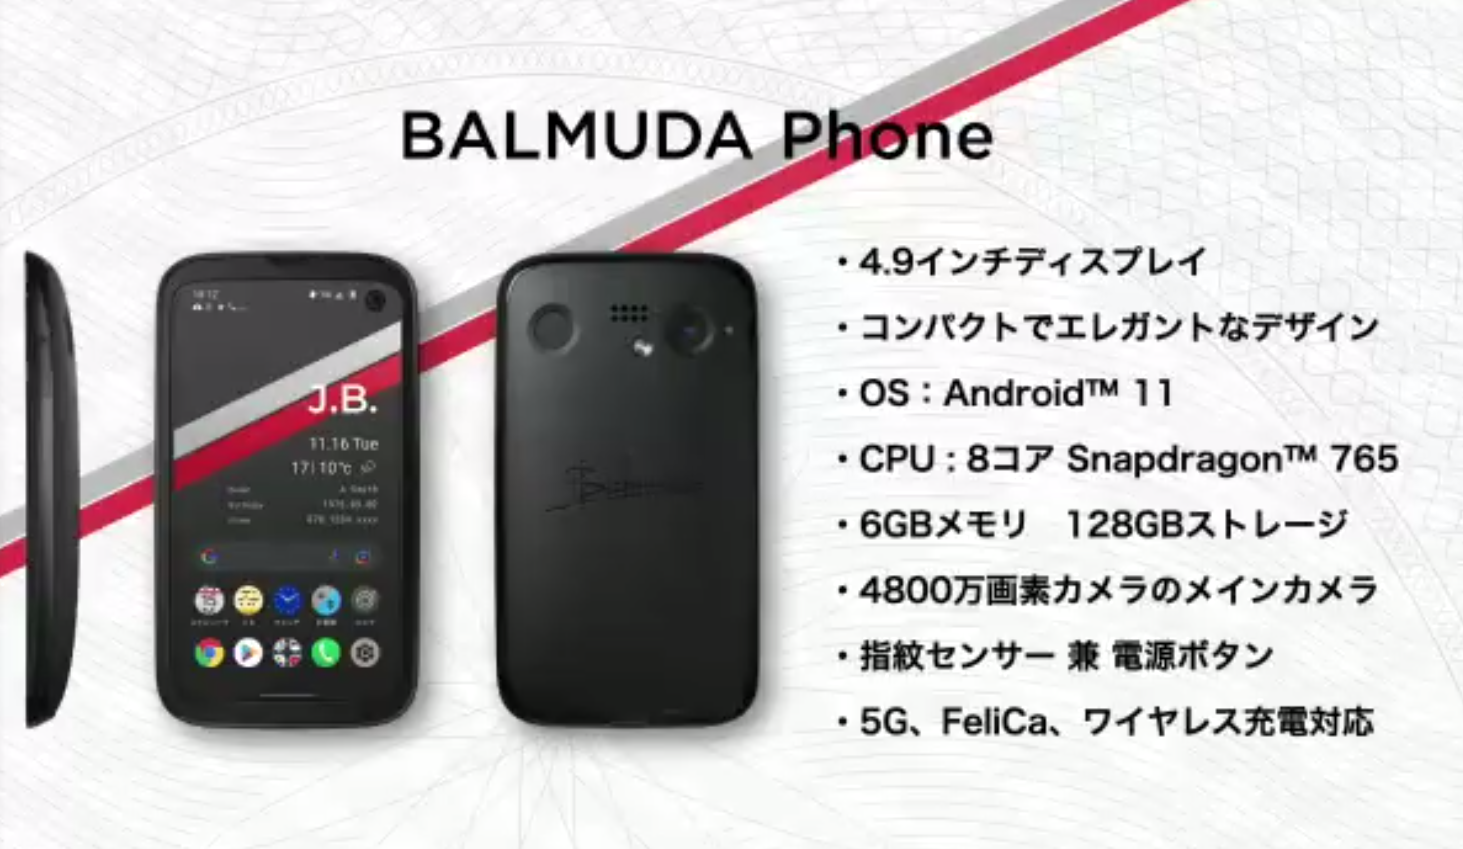 17280円 [並行輸入品] BALMUDA Phone バルミューダフォン ブラック